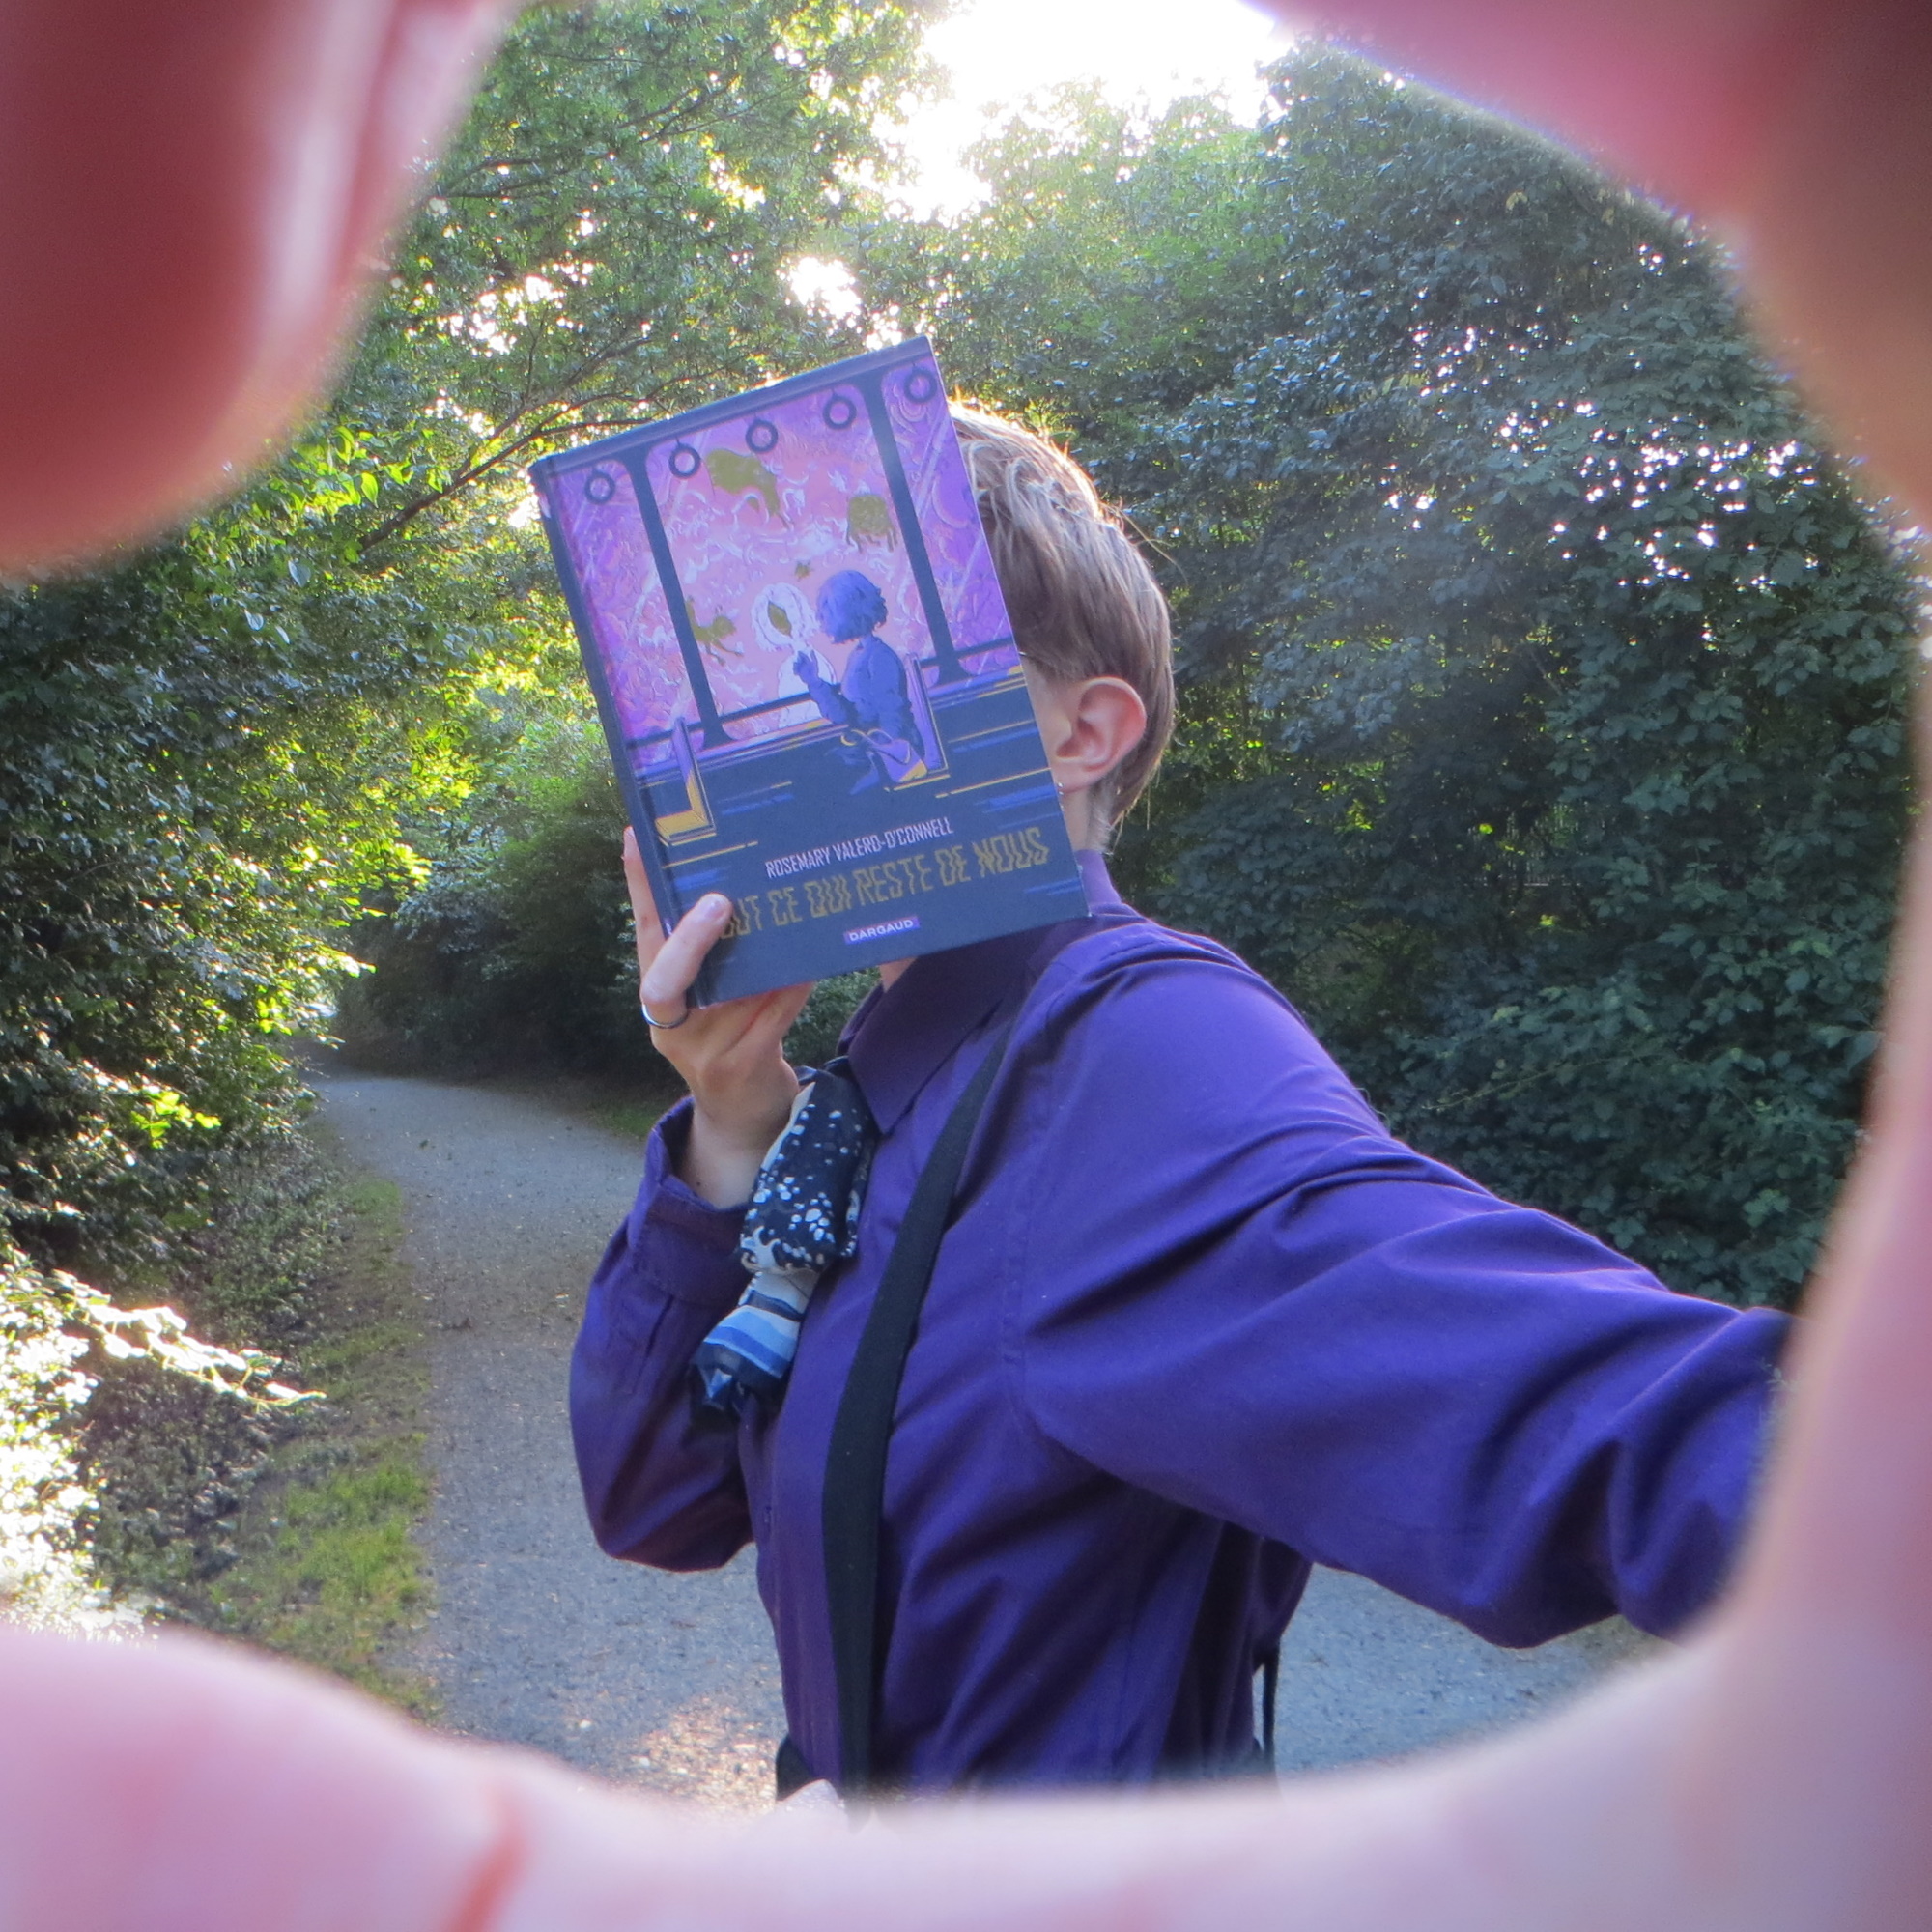 à travers un cadre entouré d'une main, on voit une personne en chemise violette lisant Tout ce qui Reste de Nous de Rosemary Valero O’Connell devant un chemin entouré d'arbres au soleil couchant